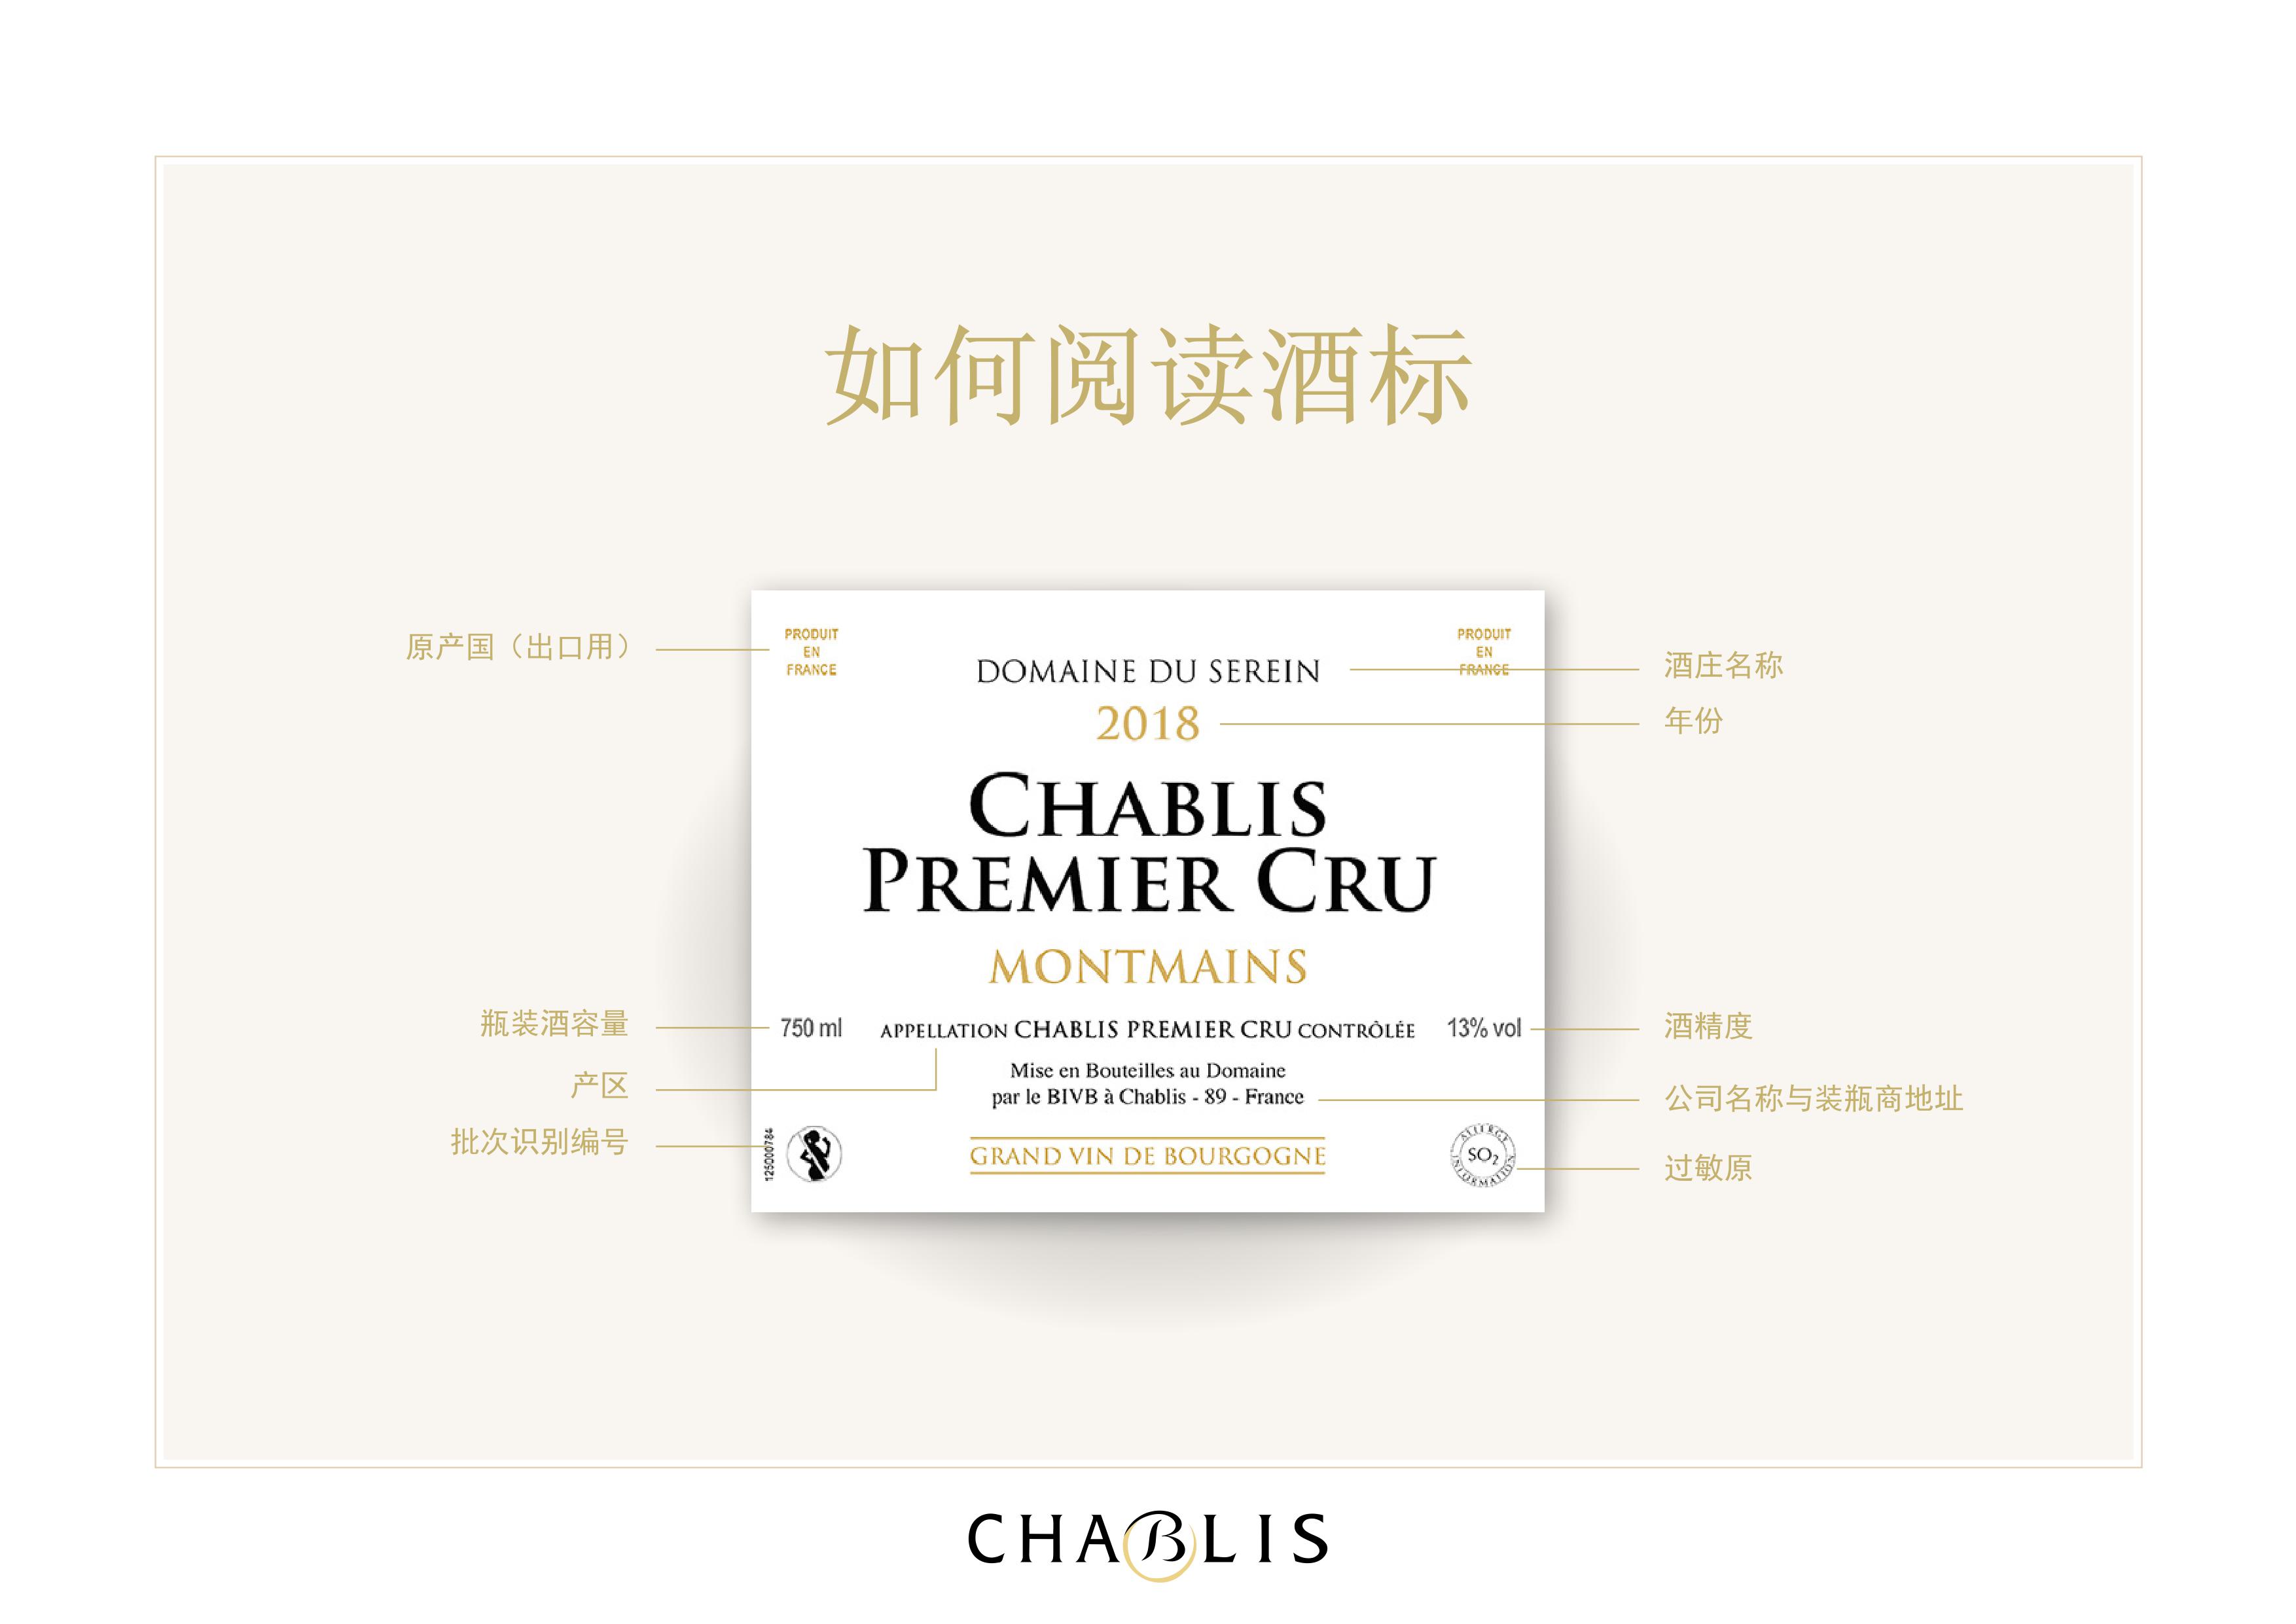 信息明确的酒标 - 夏布利/Chablis